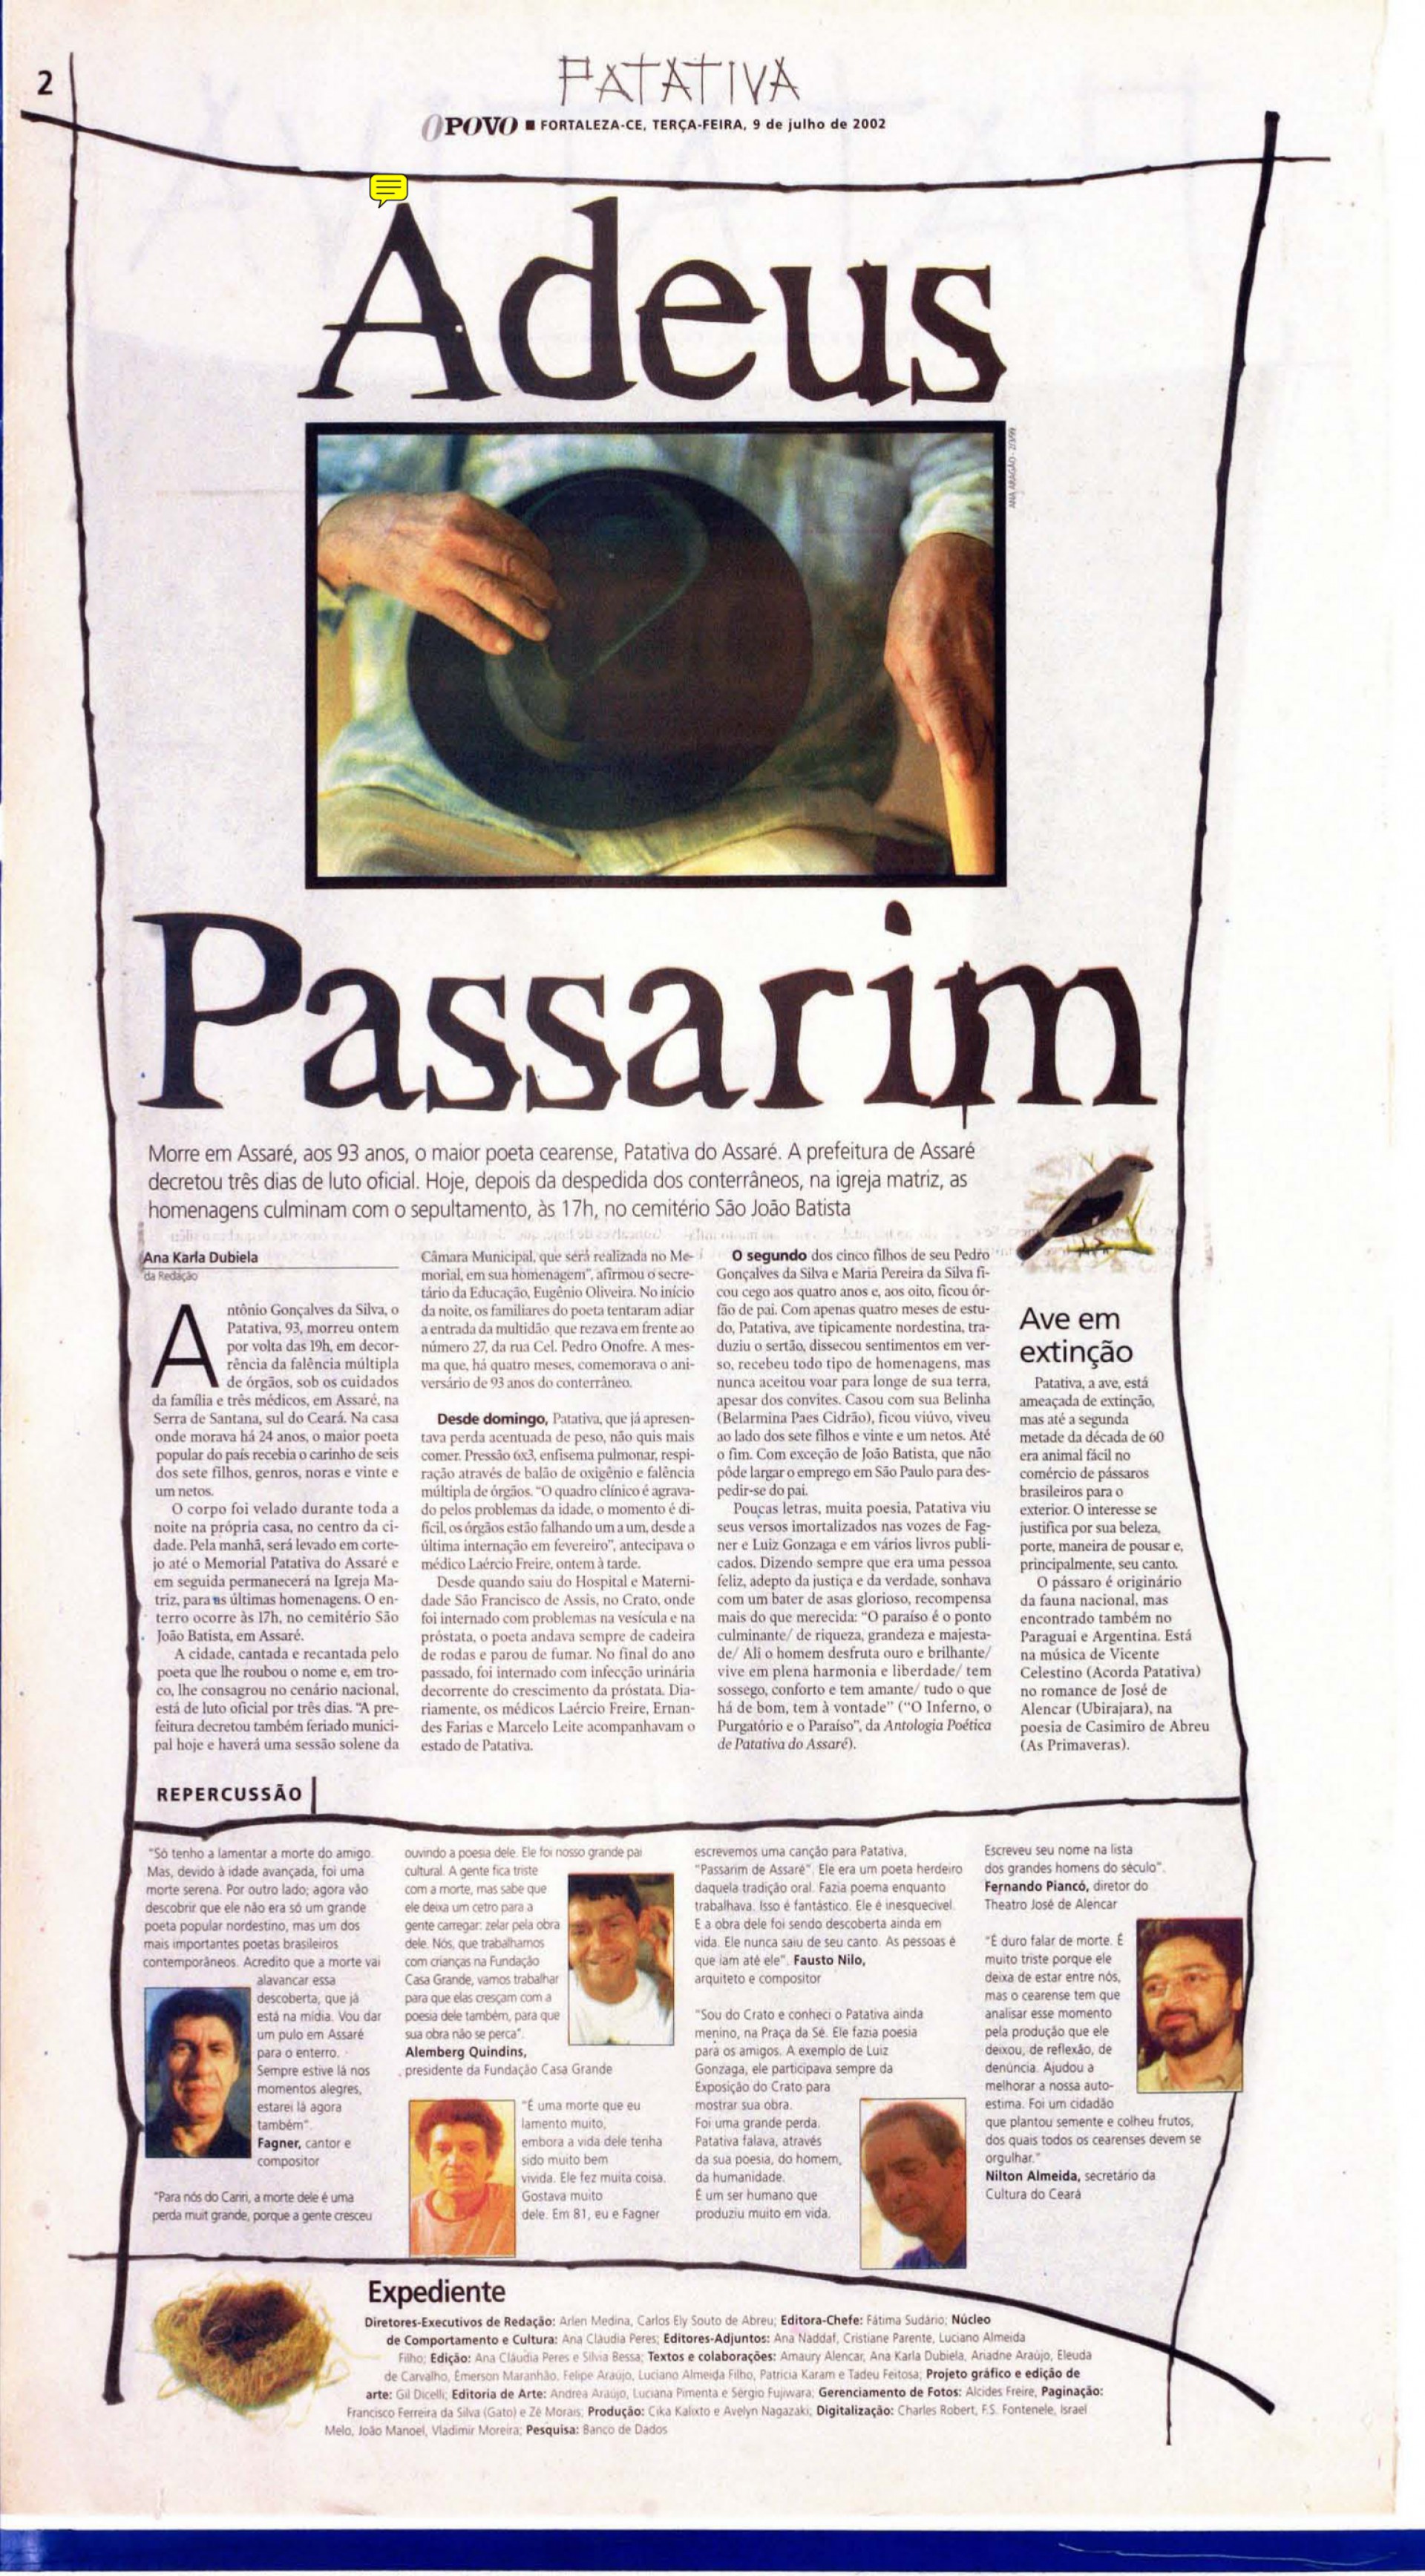 (Foto: O POVO.doc)Poeta Patativa do Assaré faleceu em 8 de julho de 2002, aos 93 anos